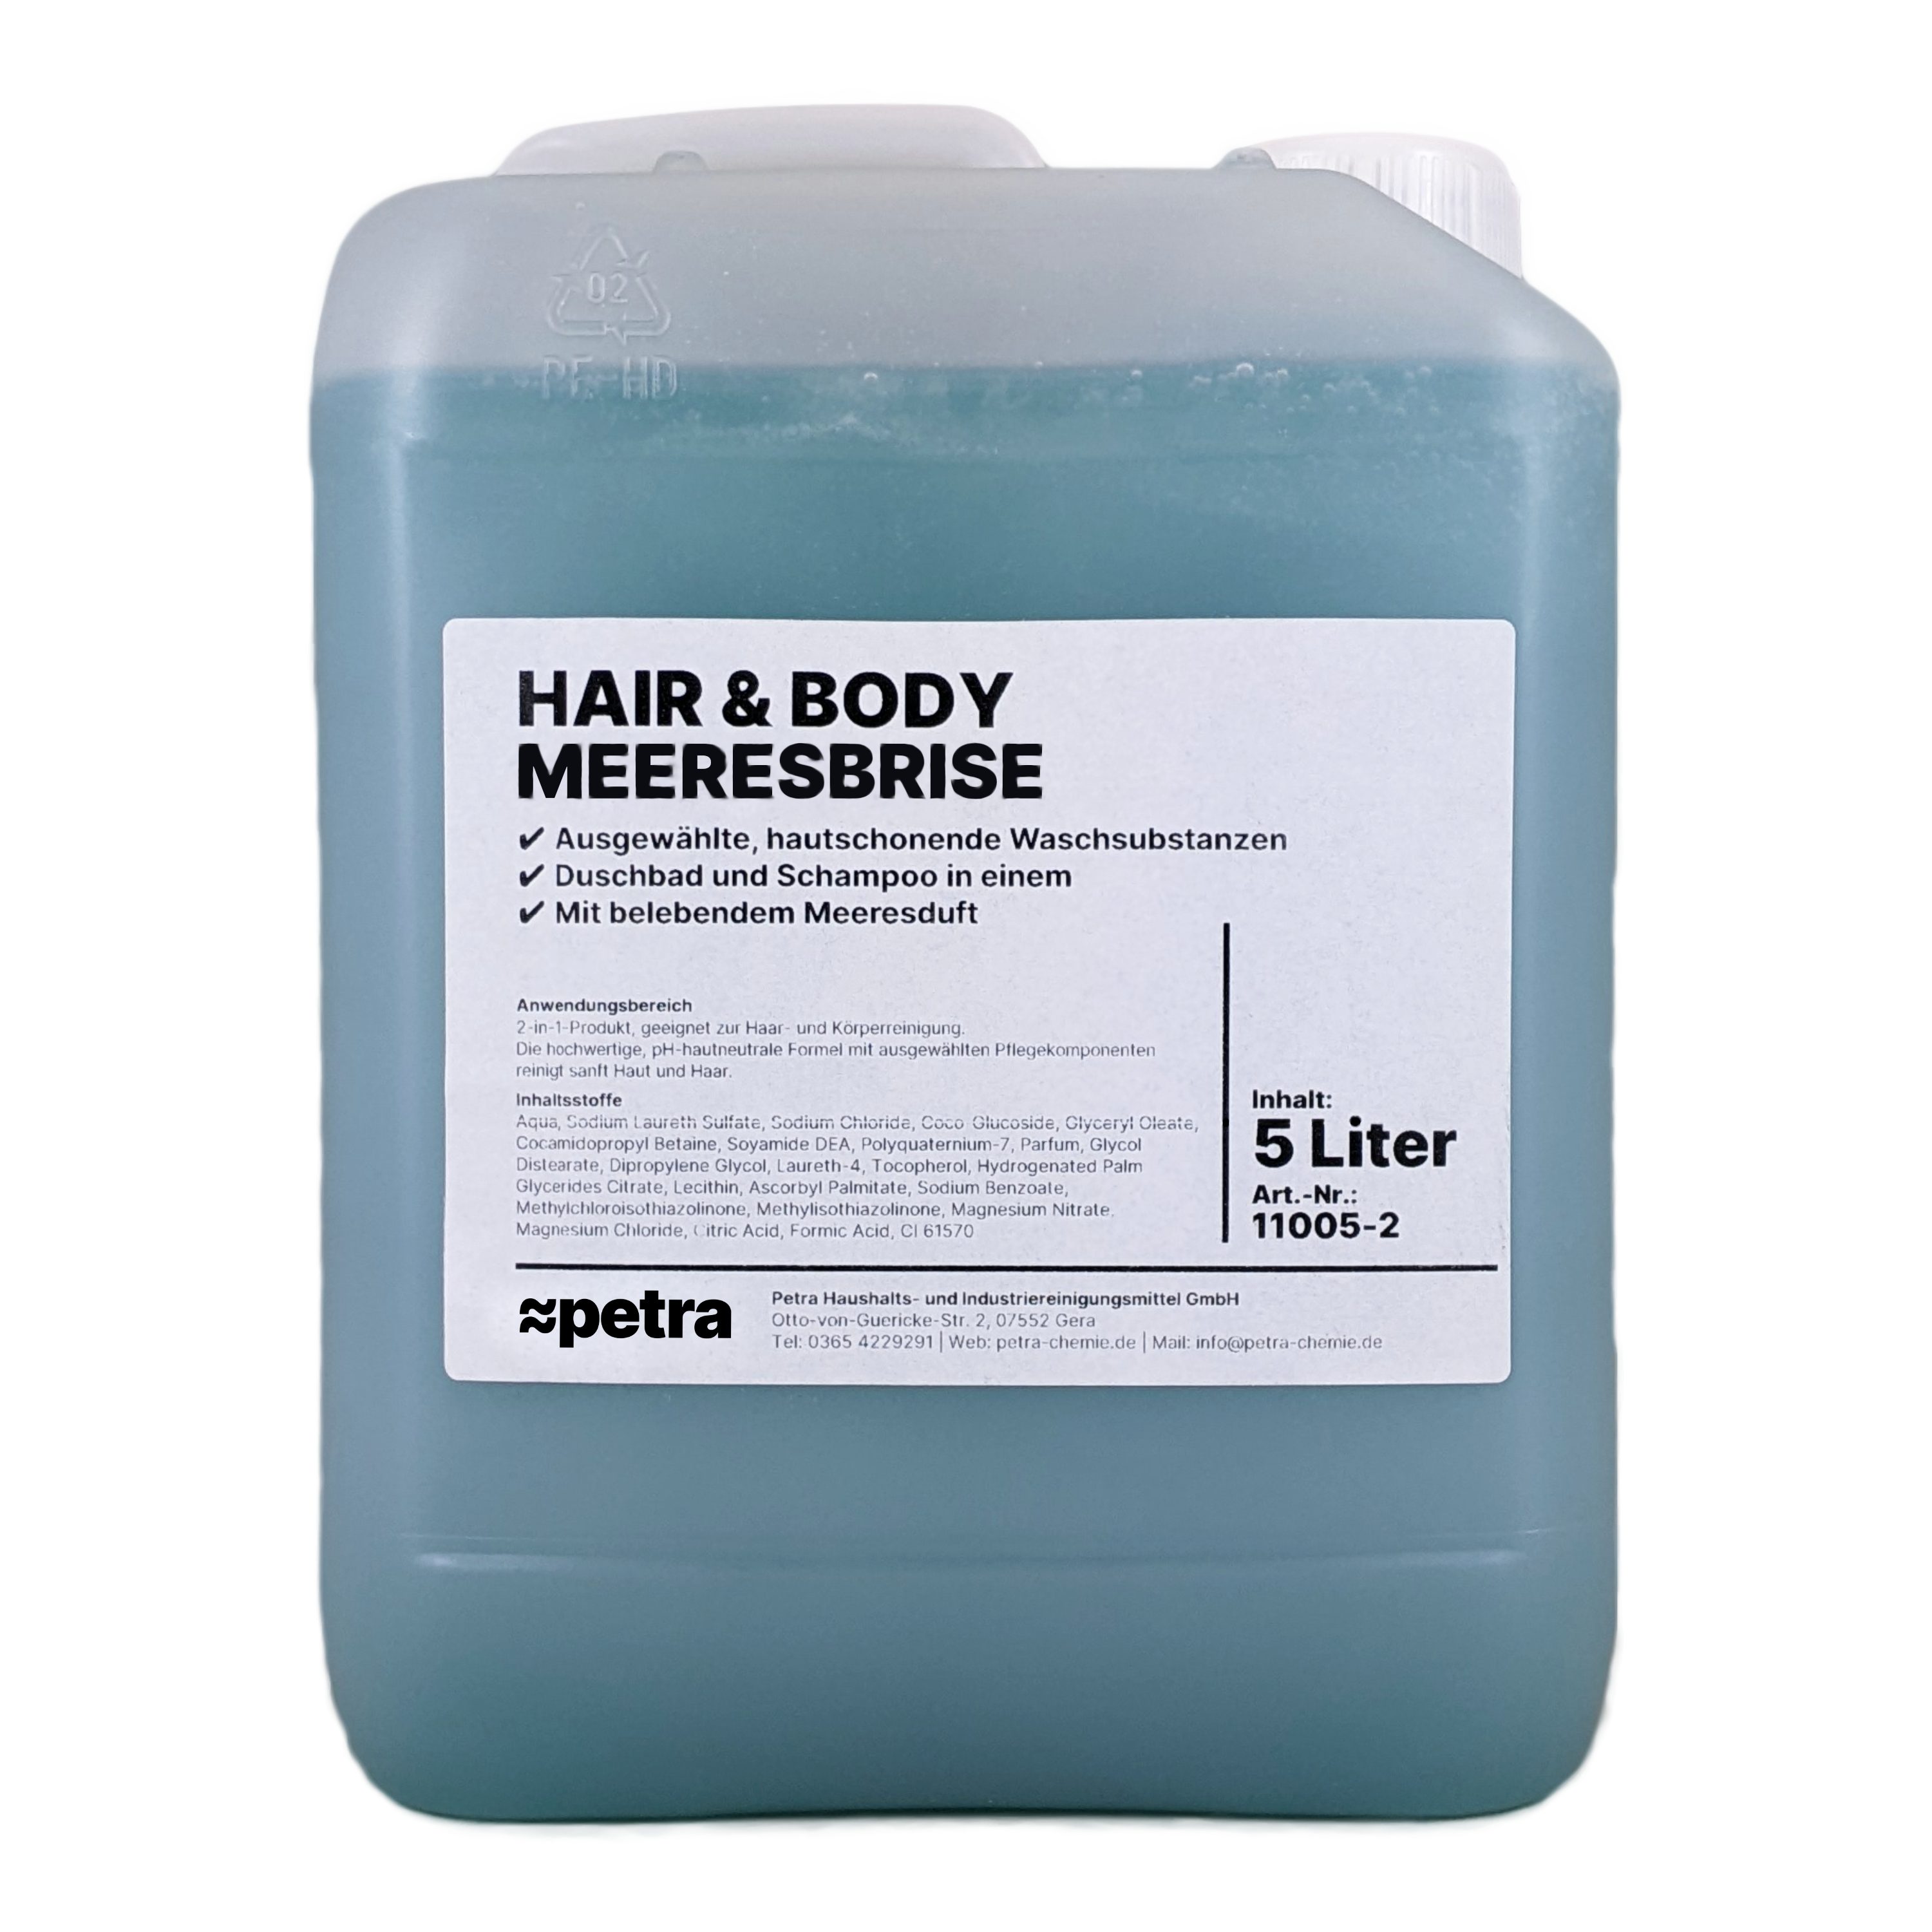 ≈petra Duschgel Hair & Body Meeresbrise [2x5 Liter Kanister], 2-in-1 Duschgel und Shampoo für Haar und Körper